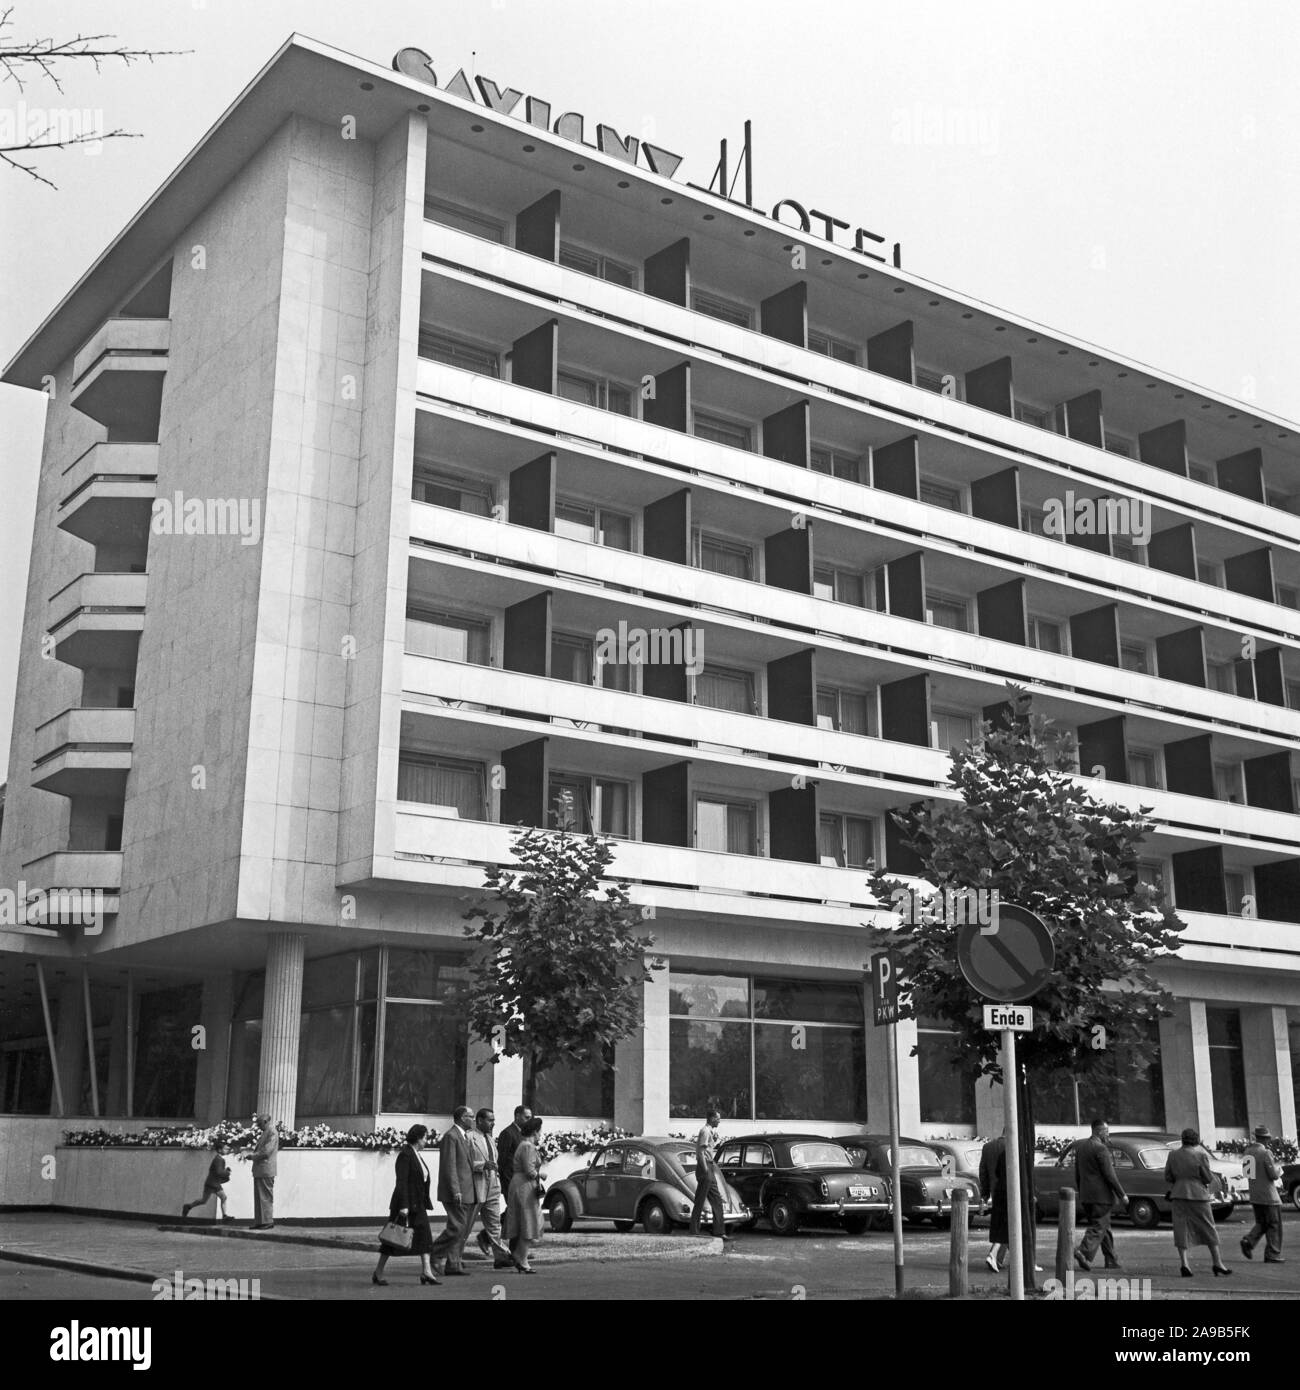 Savigny hotel at Frankfurt, Germany 1950s. Stock Photo